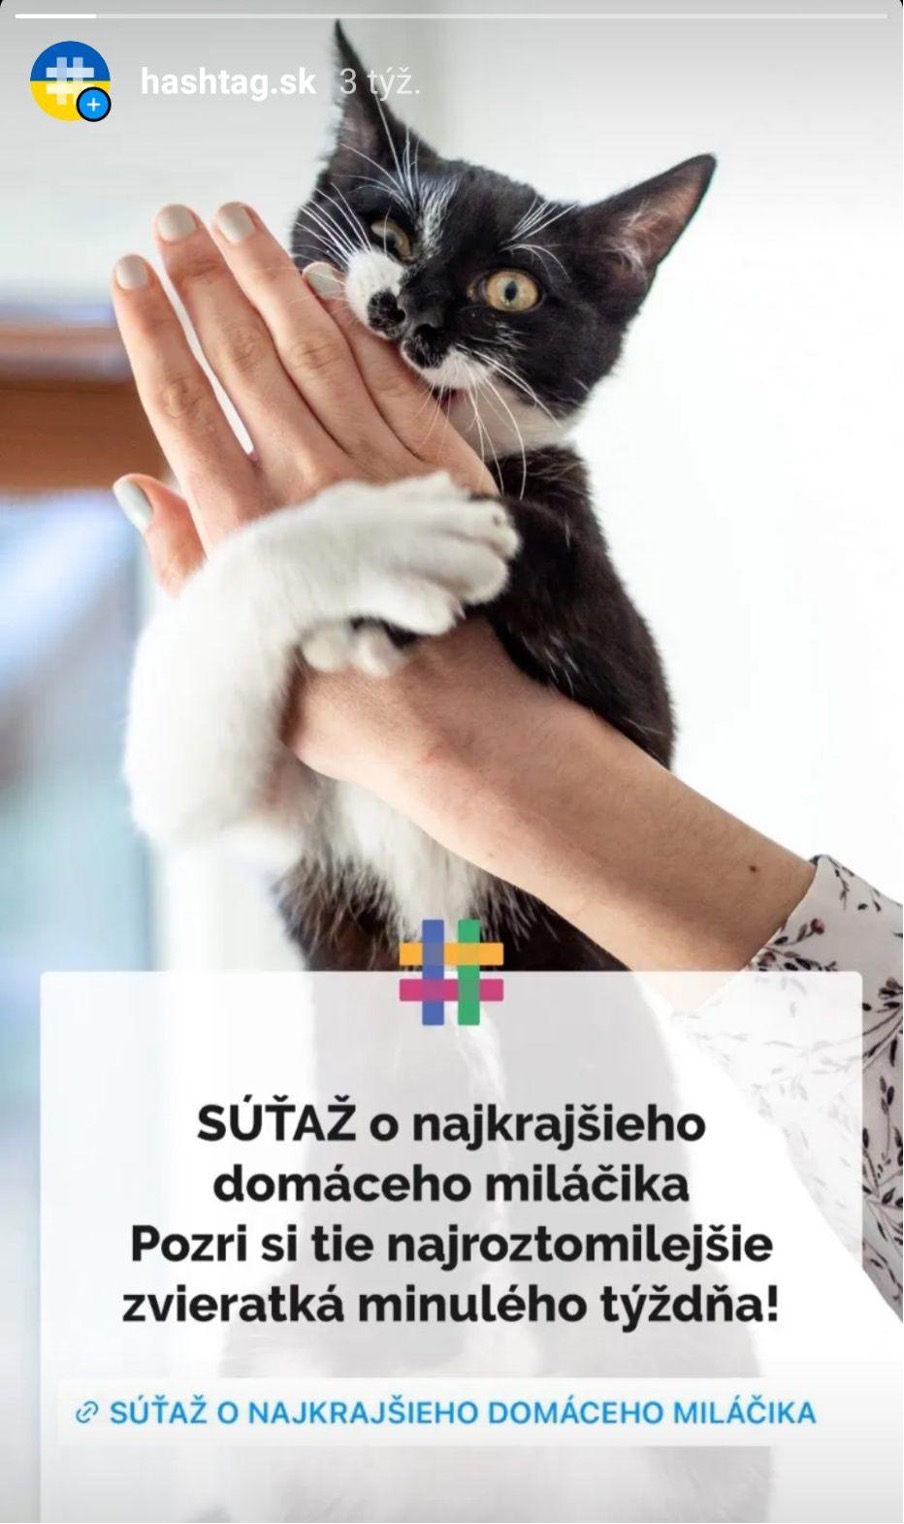 Súťaž - Hashtag.sk.